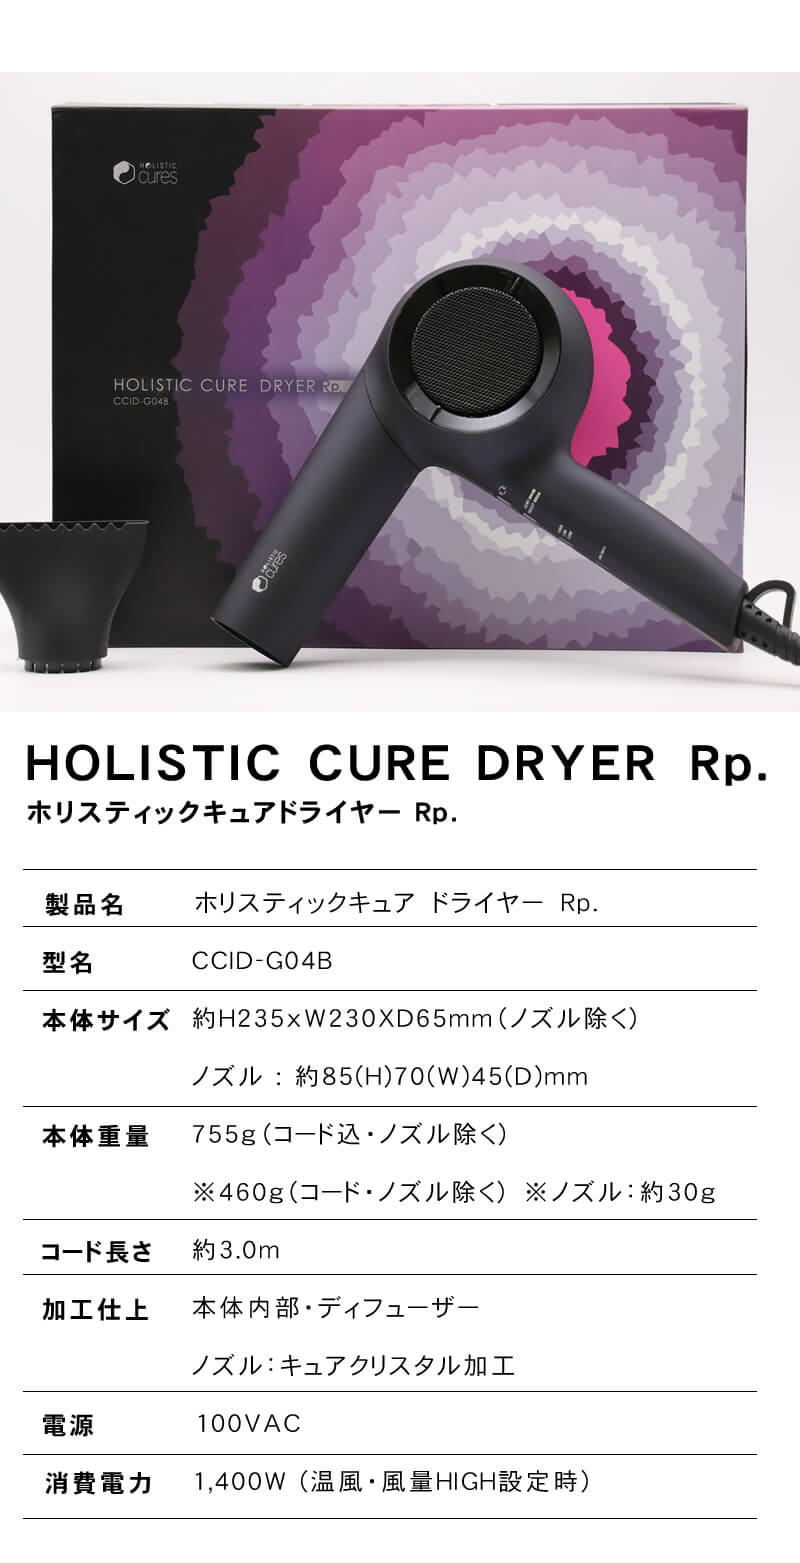 15600円 超人気高品質 ホリスティックキュア ドライヤーRp. CCID-G04B